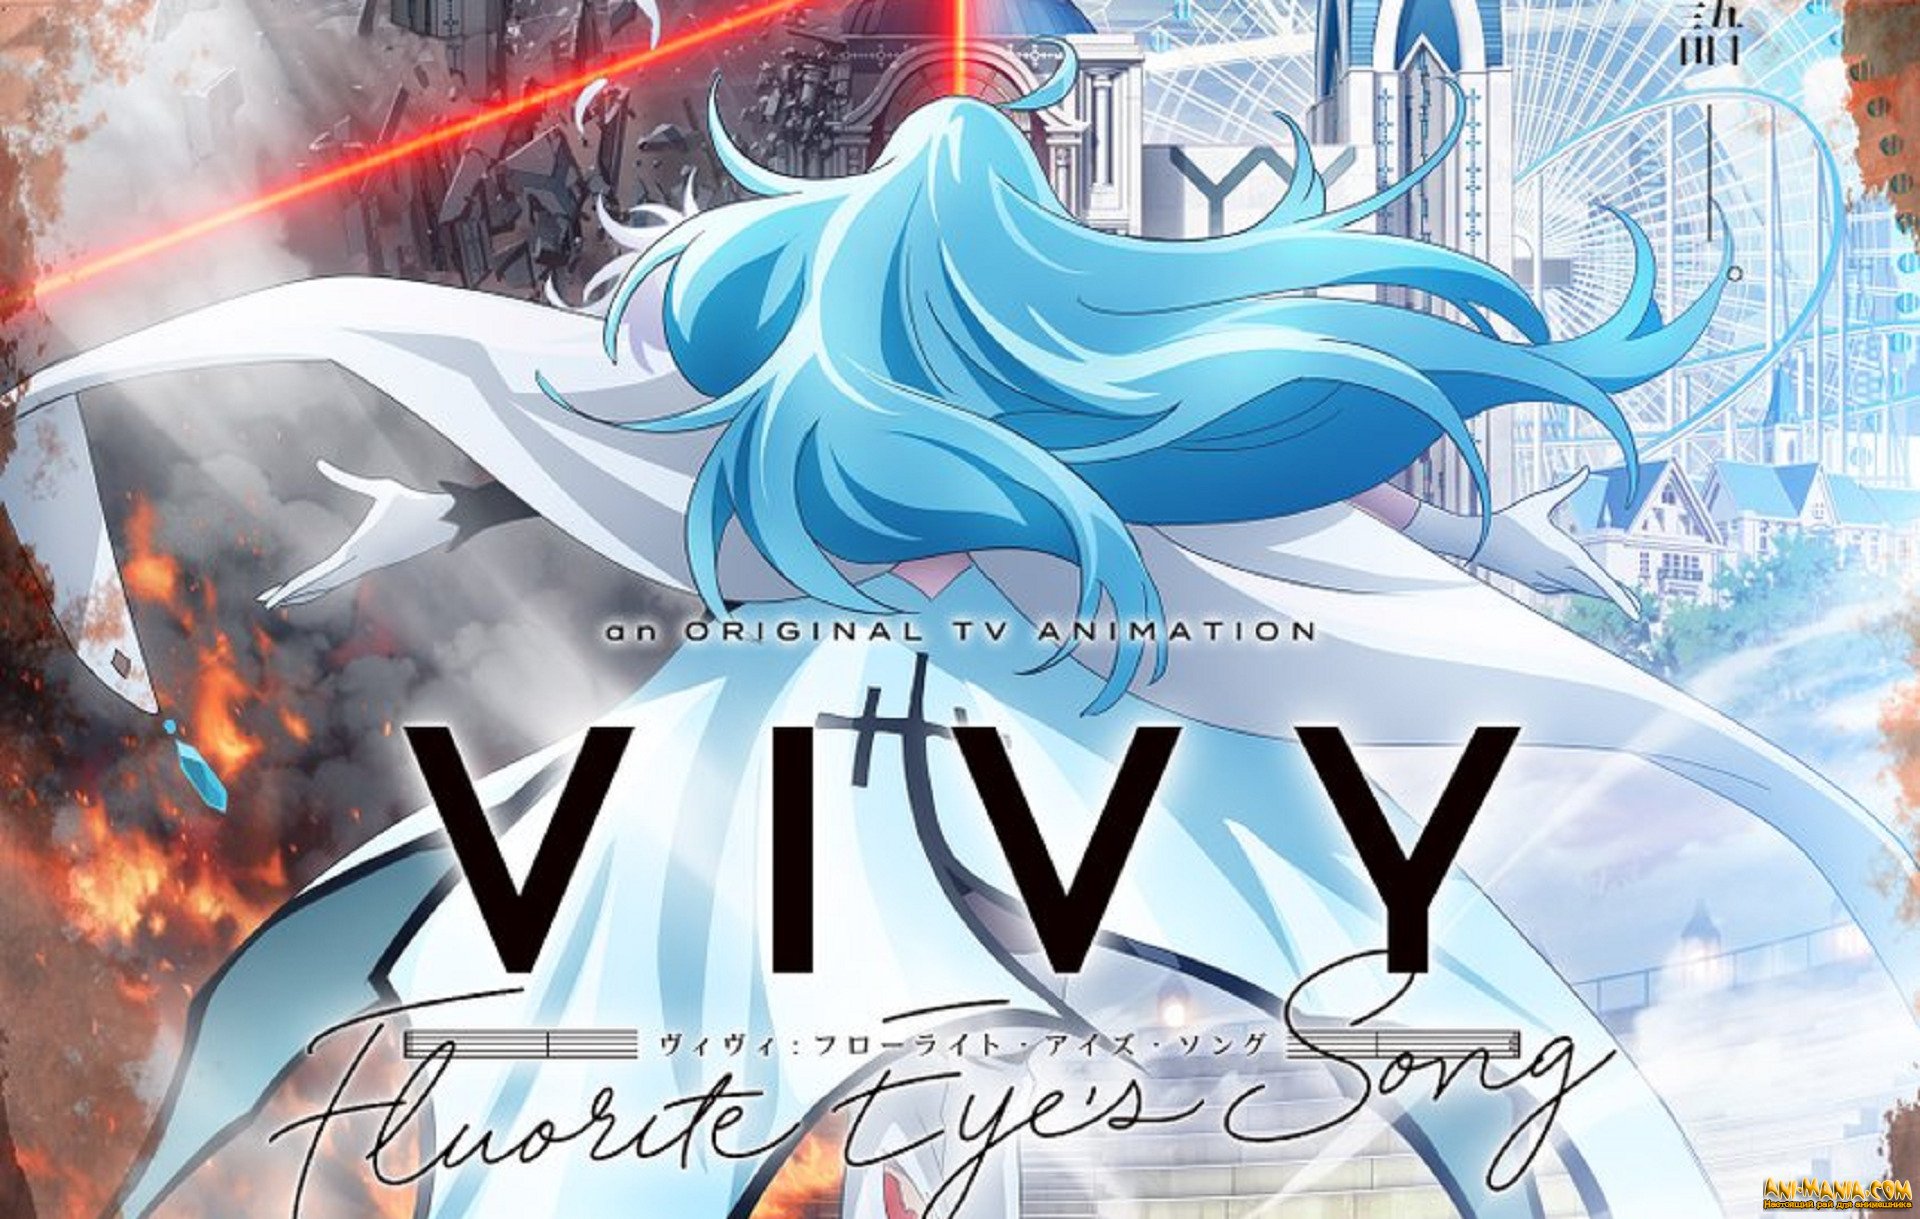 «Виви: Песнь Флюоритового Глаза» — первый концепт-трейлер оригинального аниме от создателей «Атаки титанов» и Re:Zero